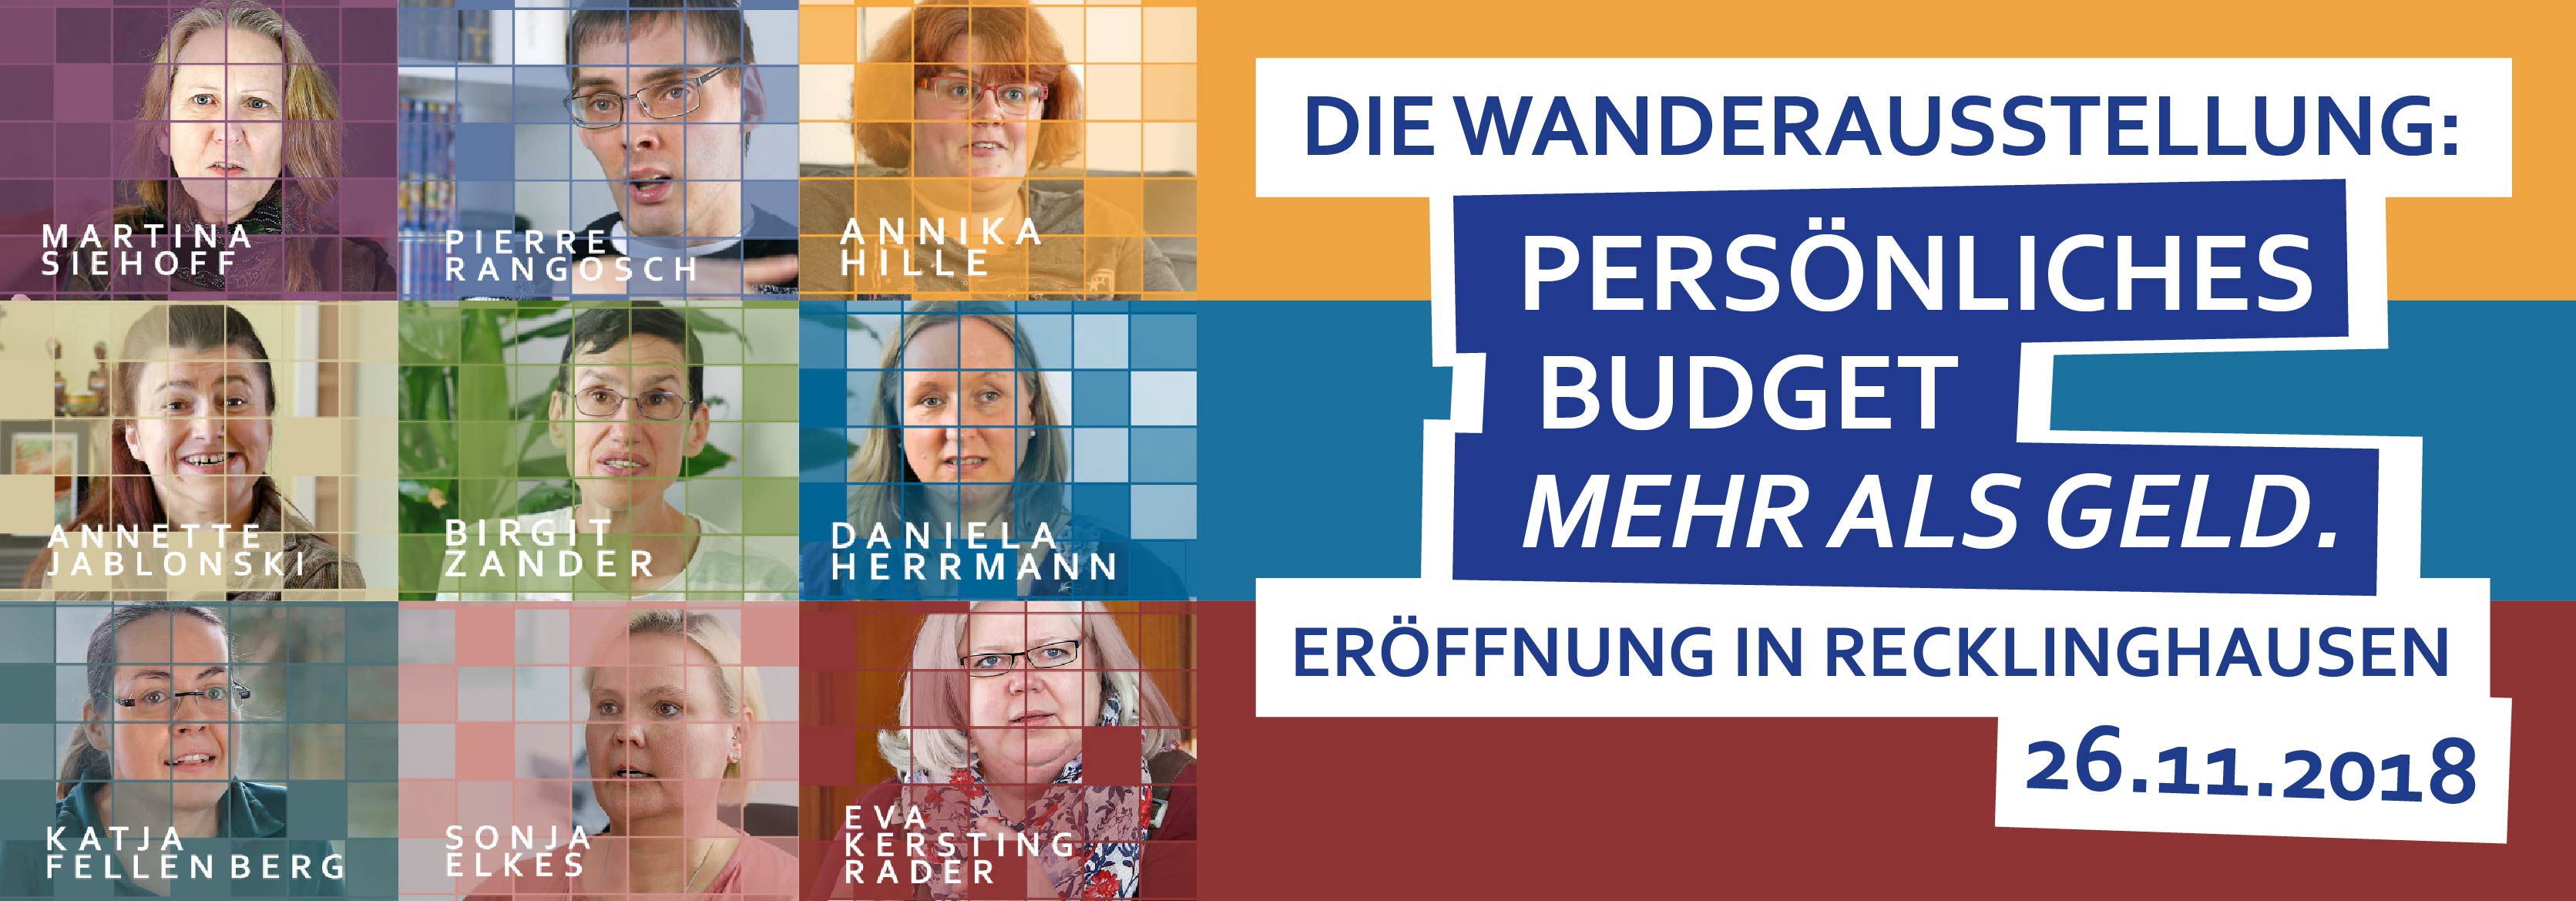 Wanderausstellung Persönliches Budget Mehr als Geld Eröffnung in Recklinghausen 26.11.2018